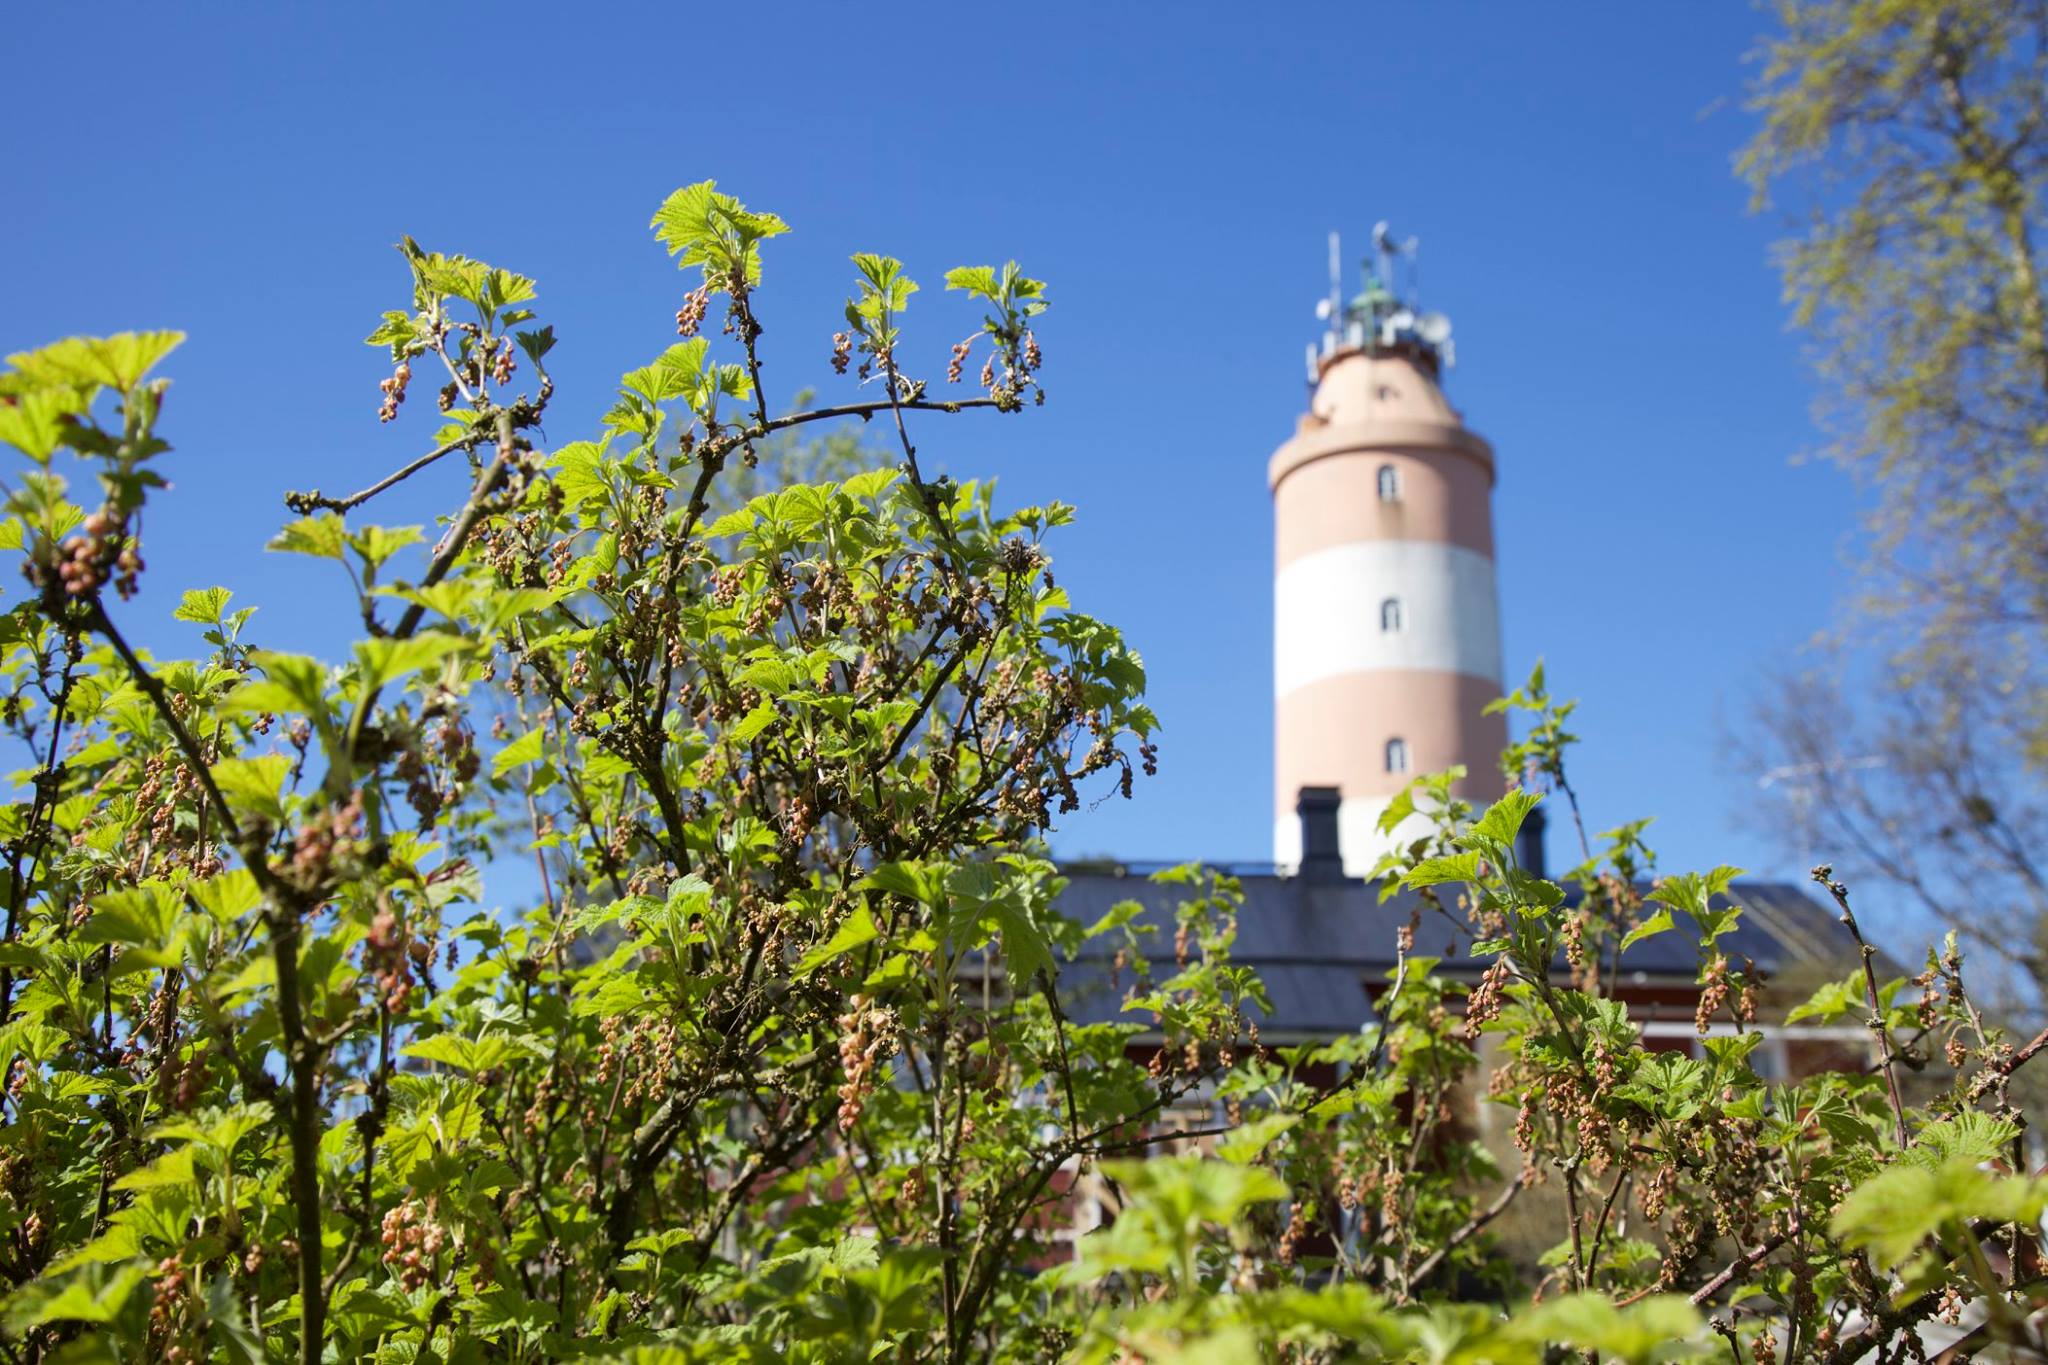 Isokari lighthouse